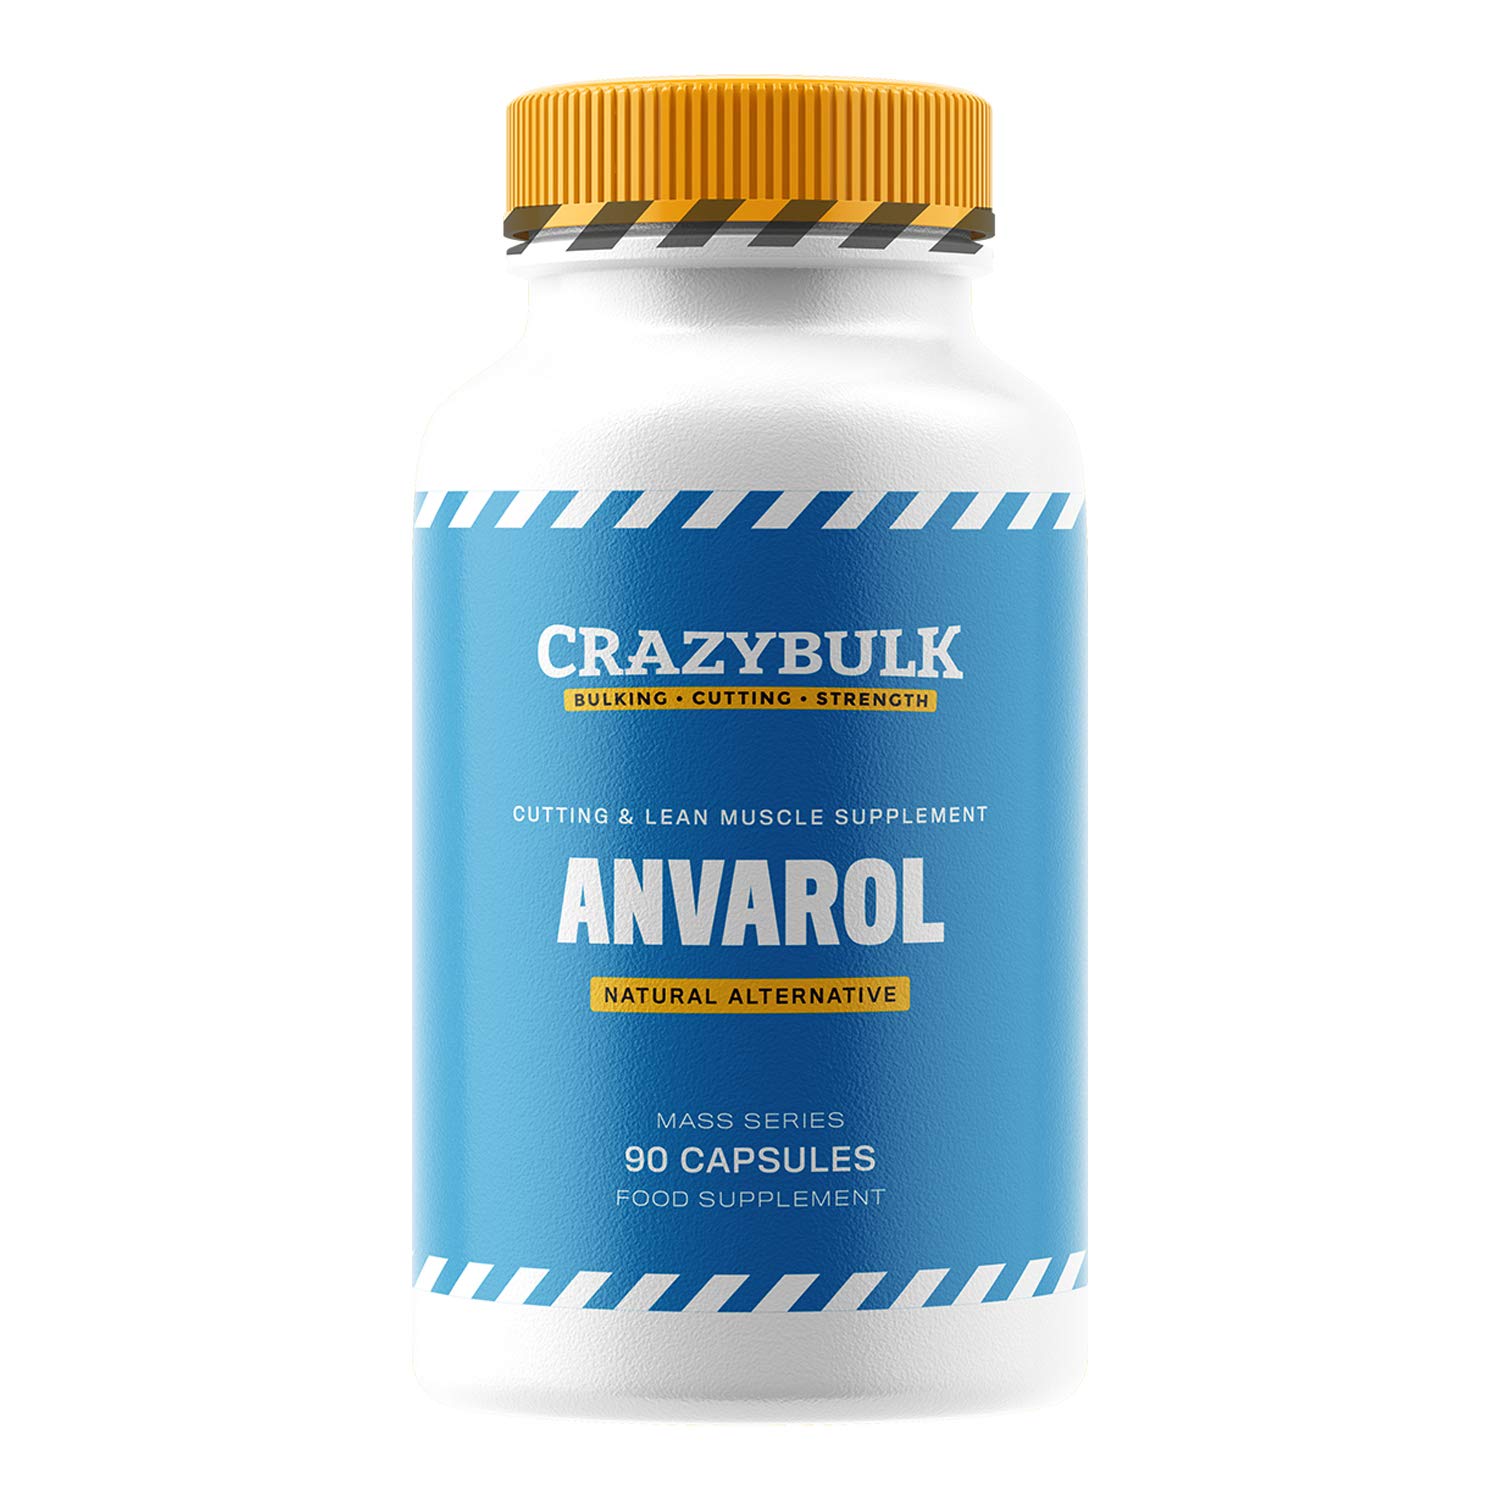 avarol - When Should a Woman Take Anavar?